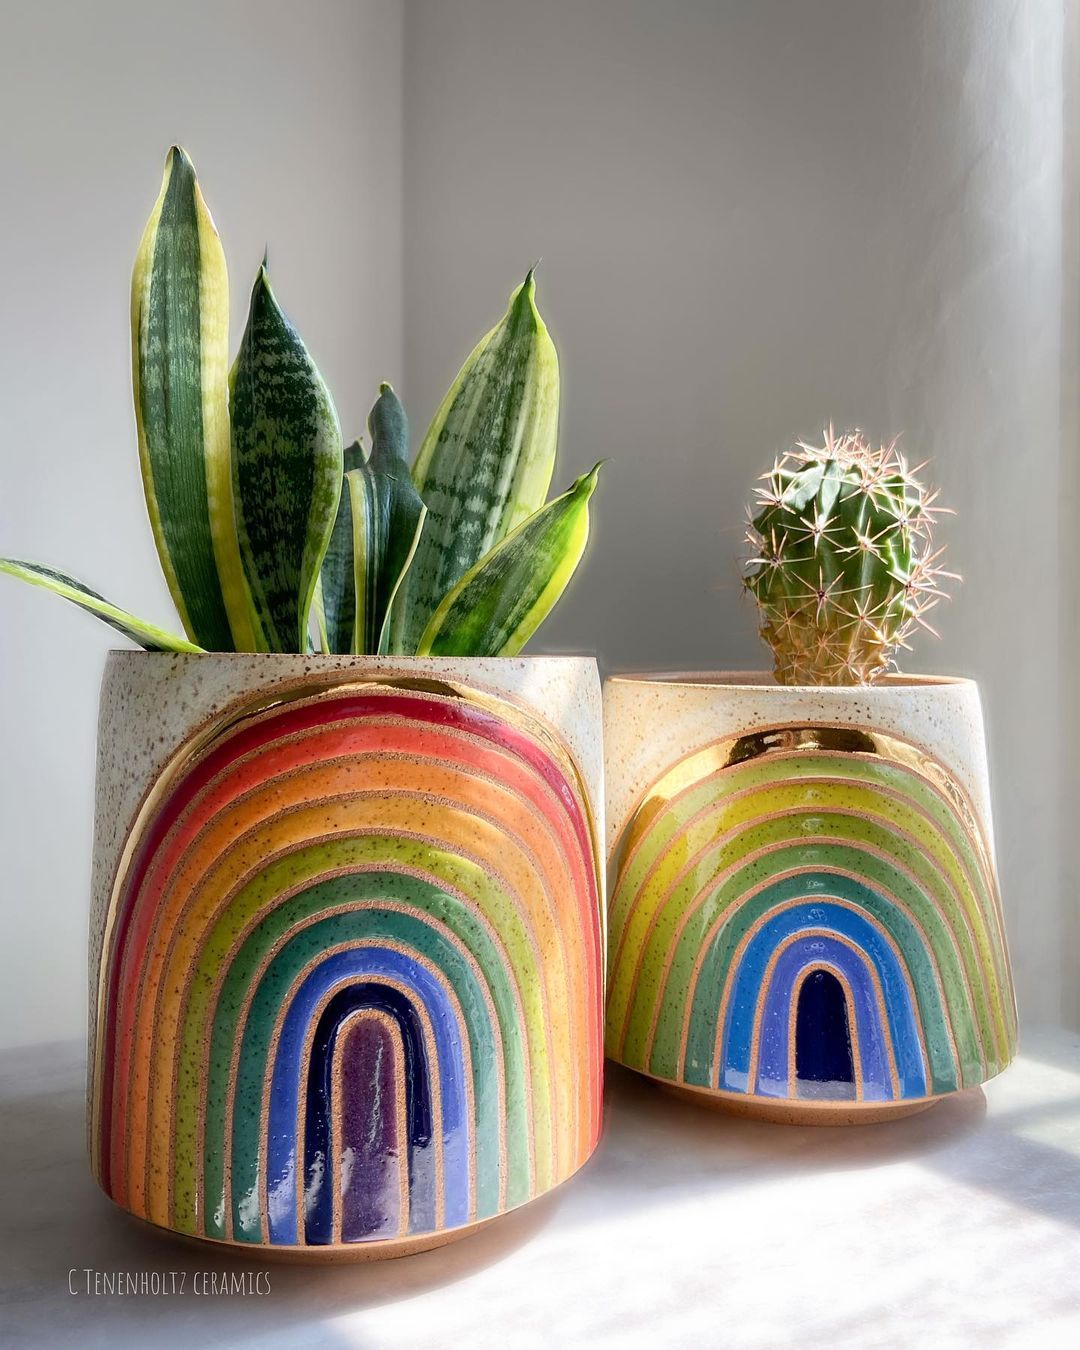 Rainbow Ceramics Gorgeous Multicolored Ceramic Pieces By Christine Tenenholtz (15)